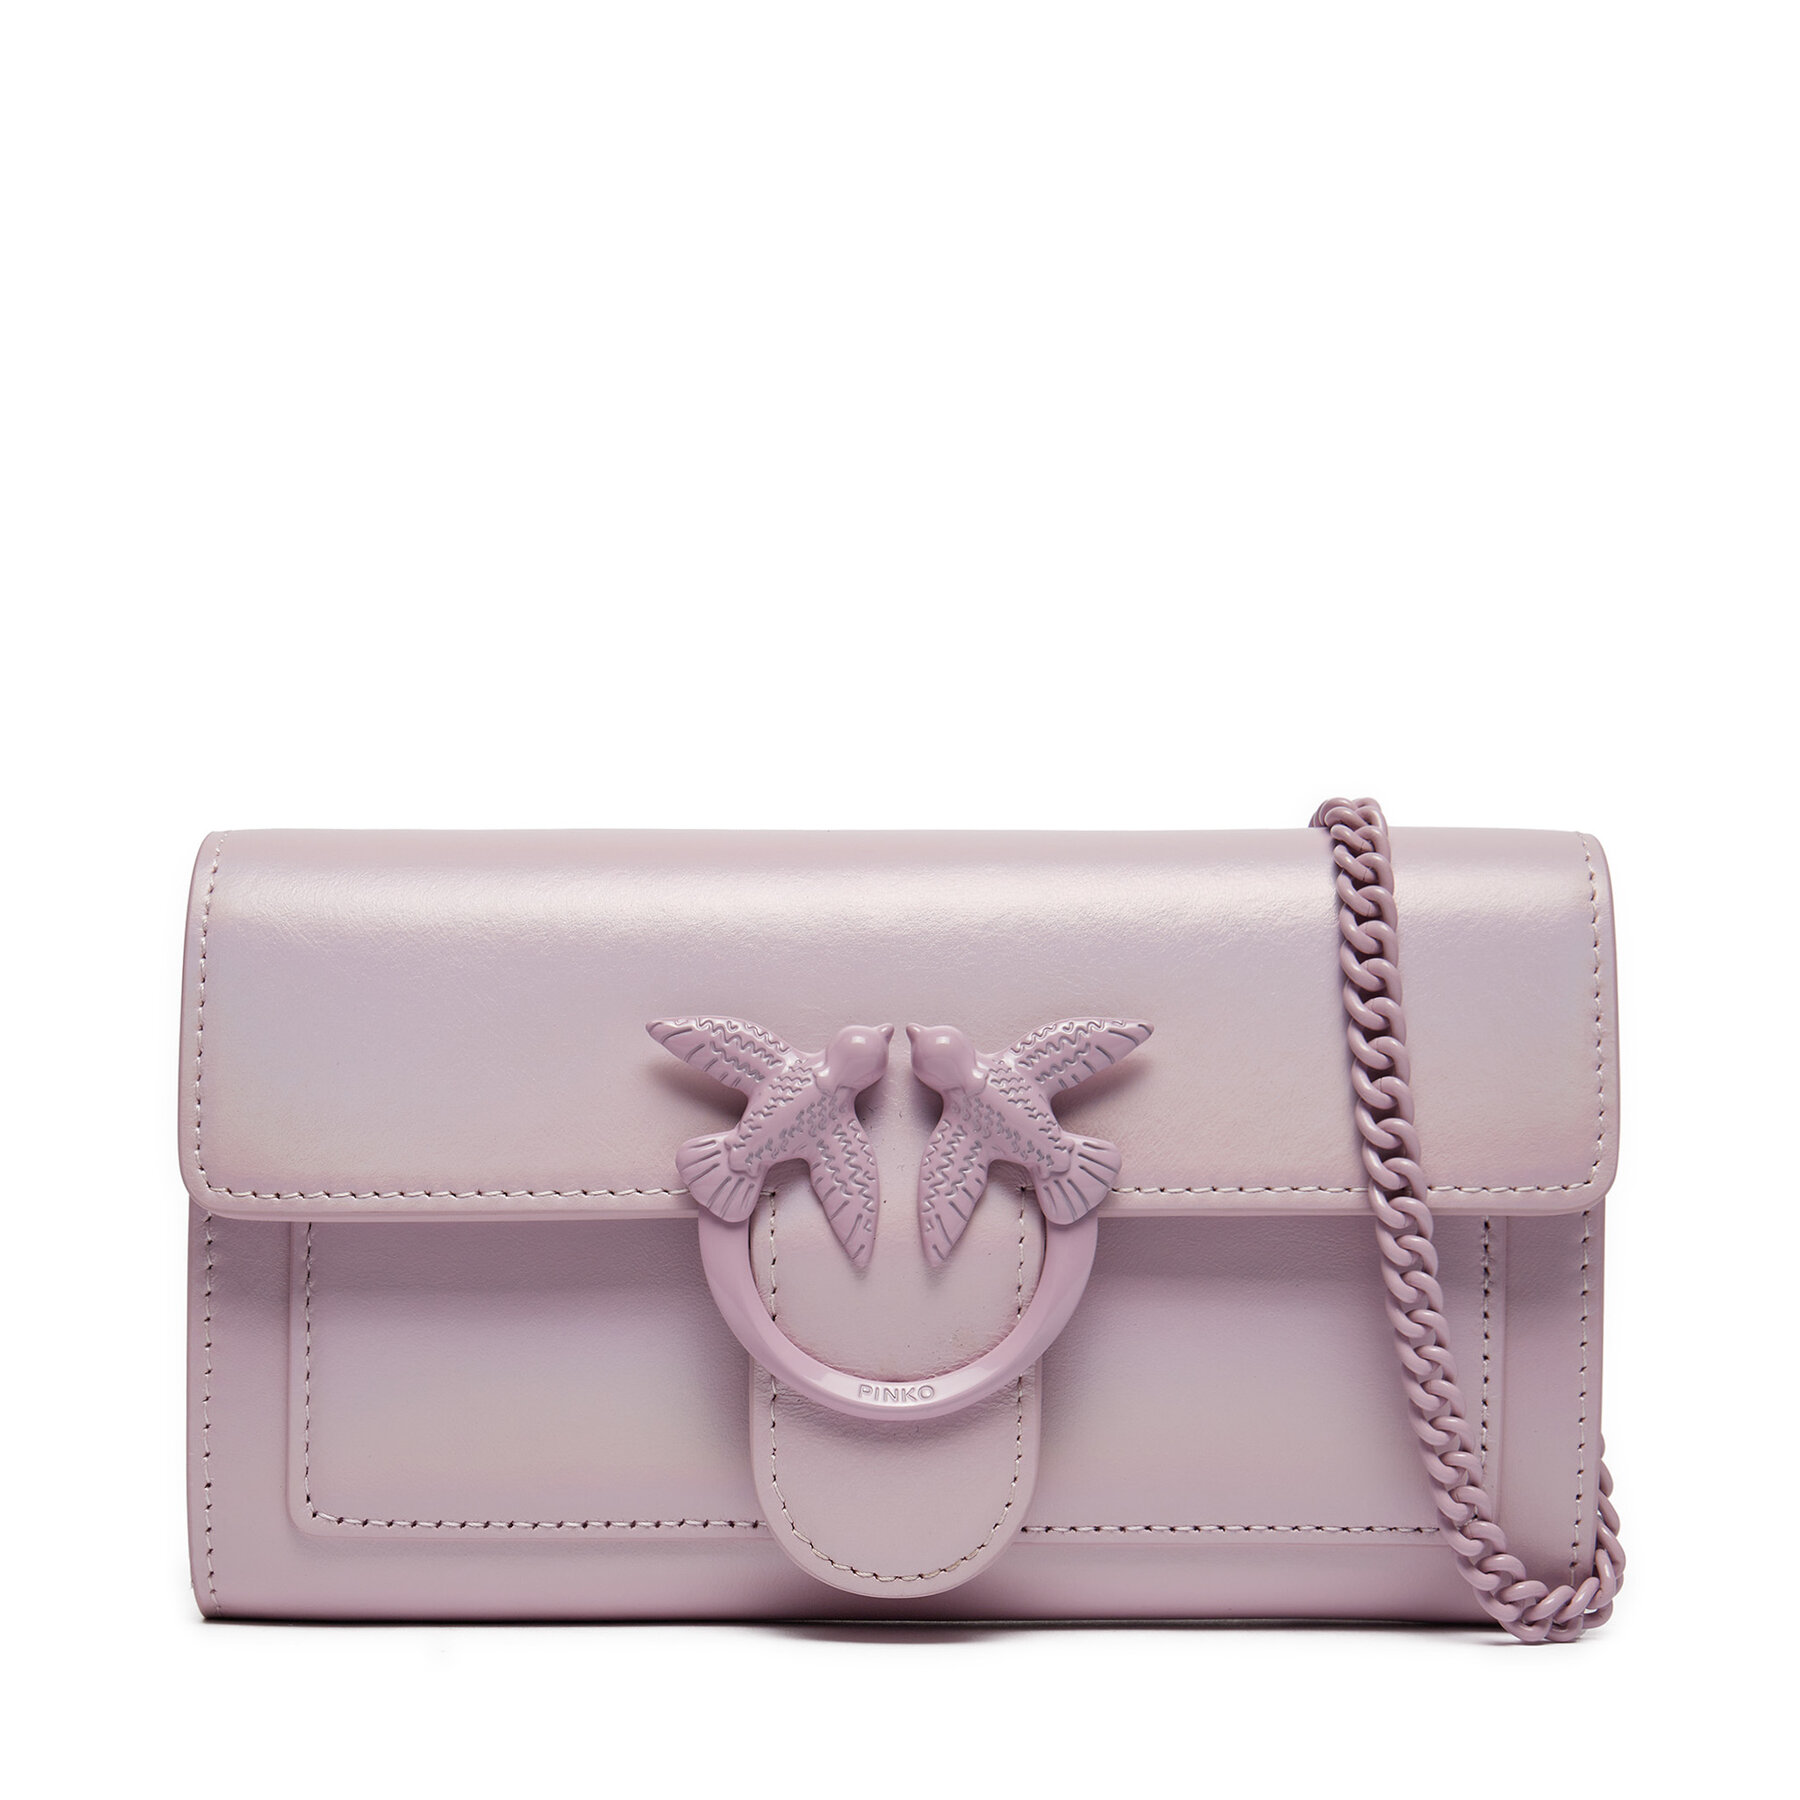 Handtasche Pinko Love One Wallet C PE 24 PLTT 100062 A124 Violett von pinko